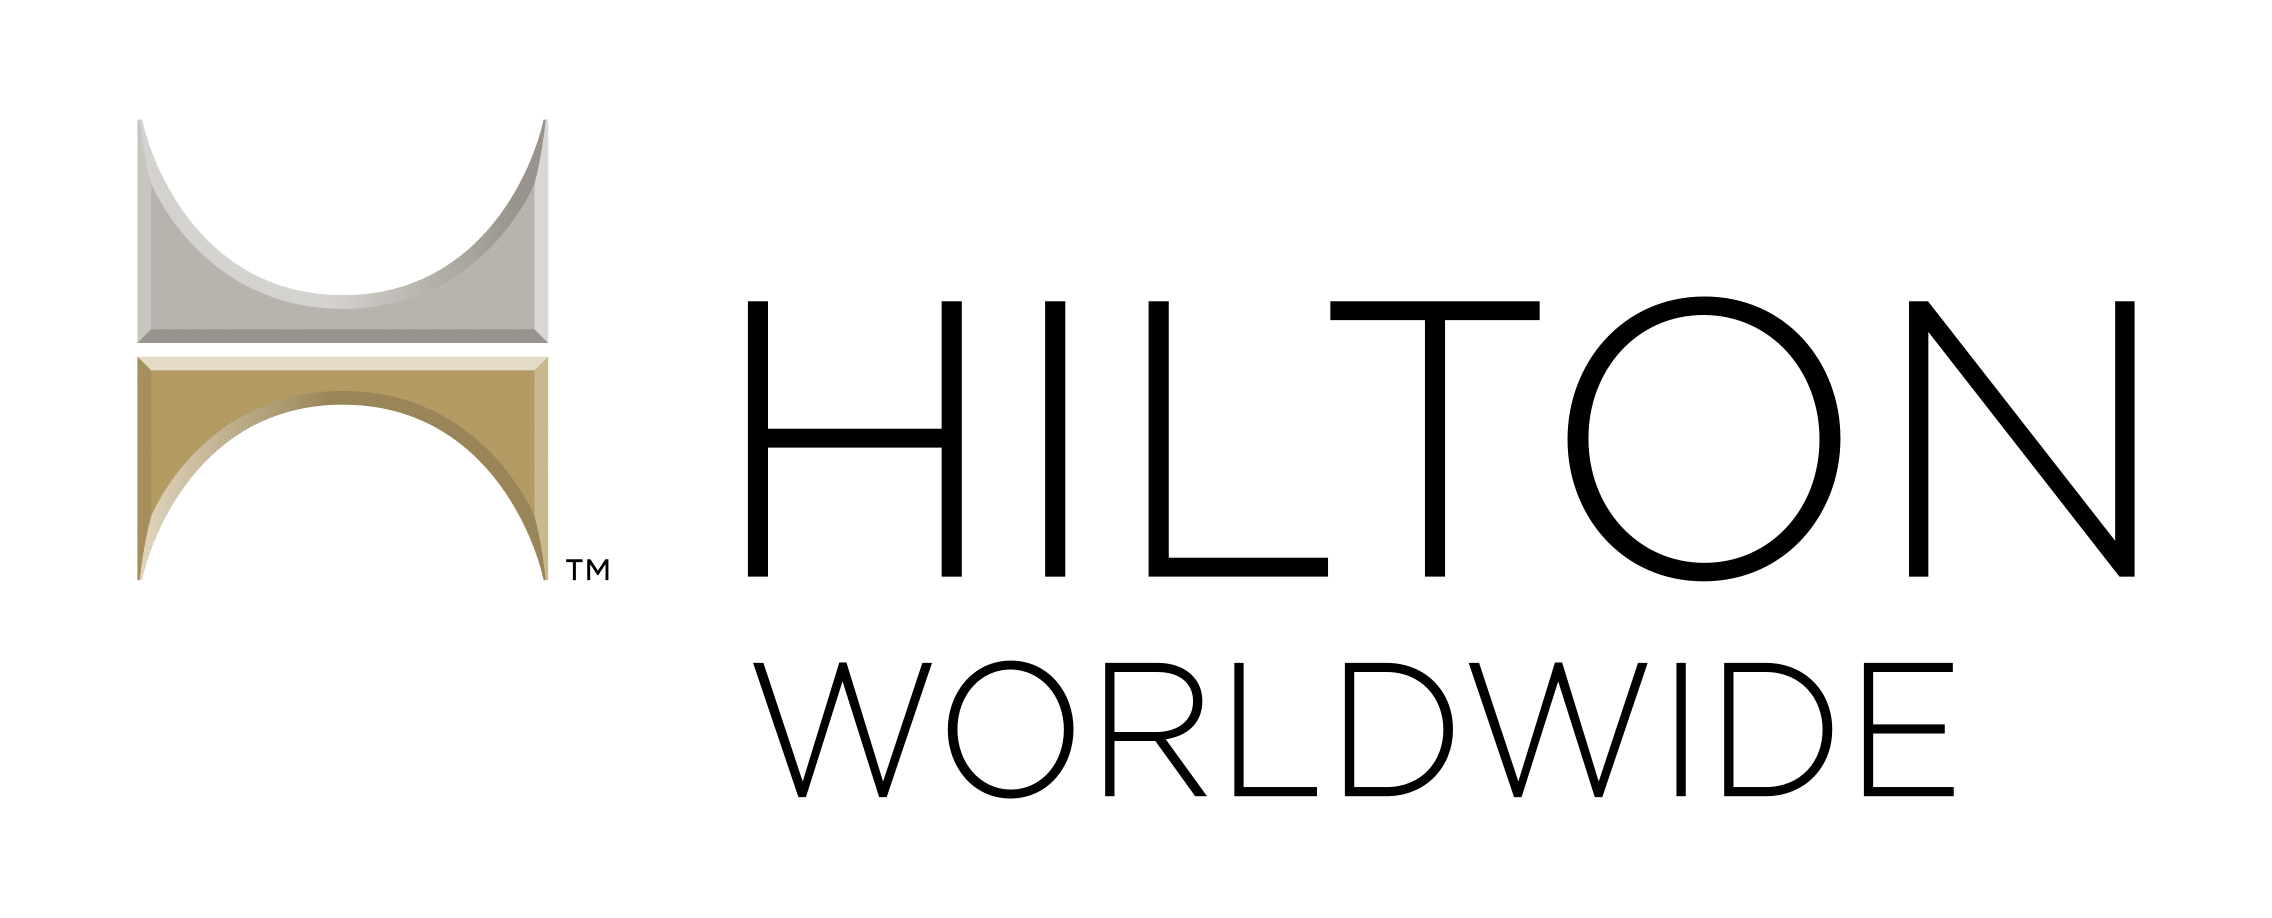 Hilton-Worldwide-logo-and-wordmark-2